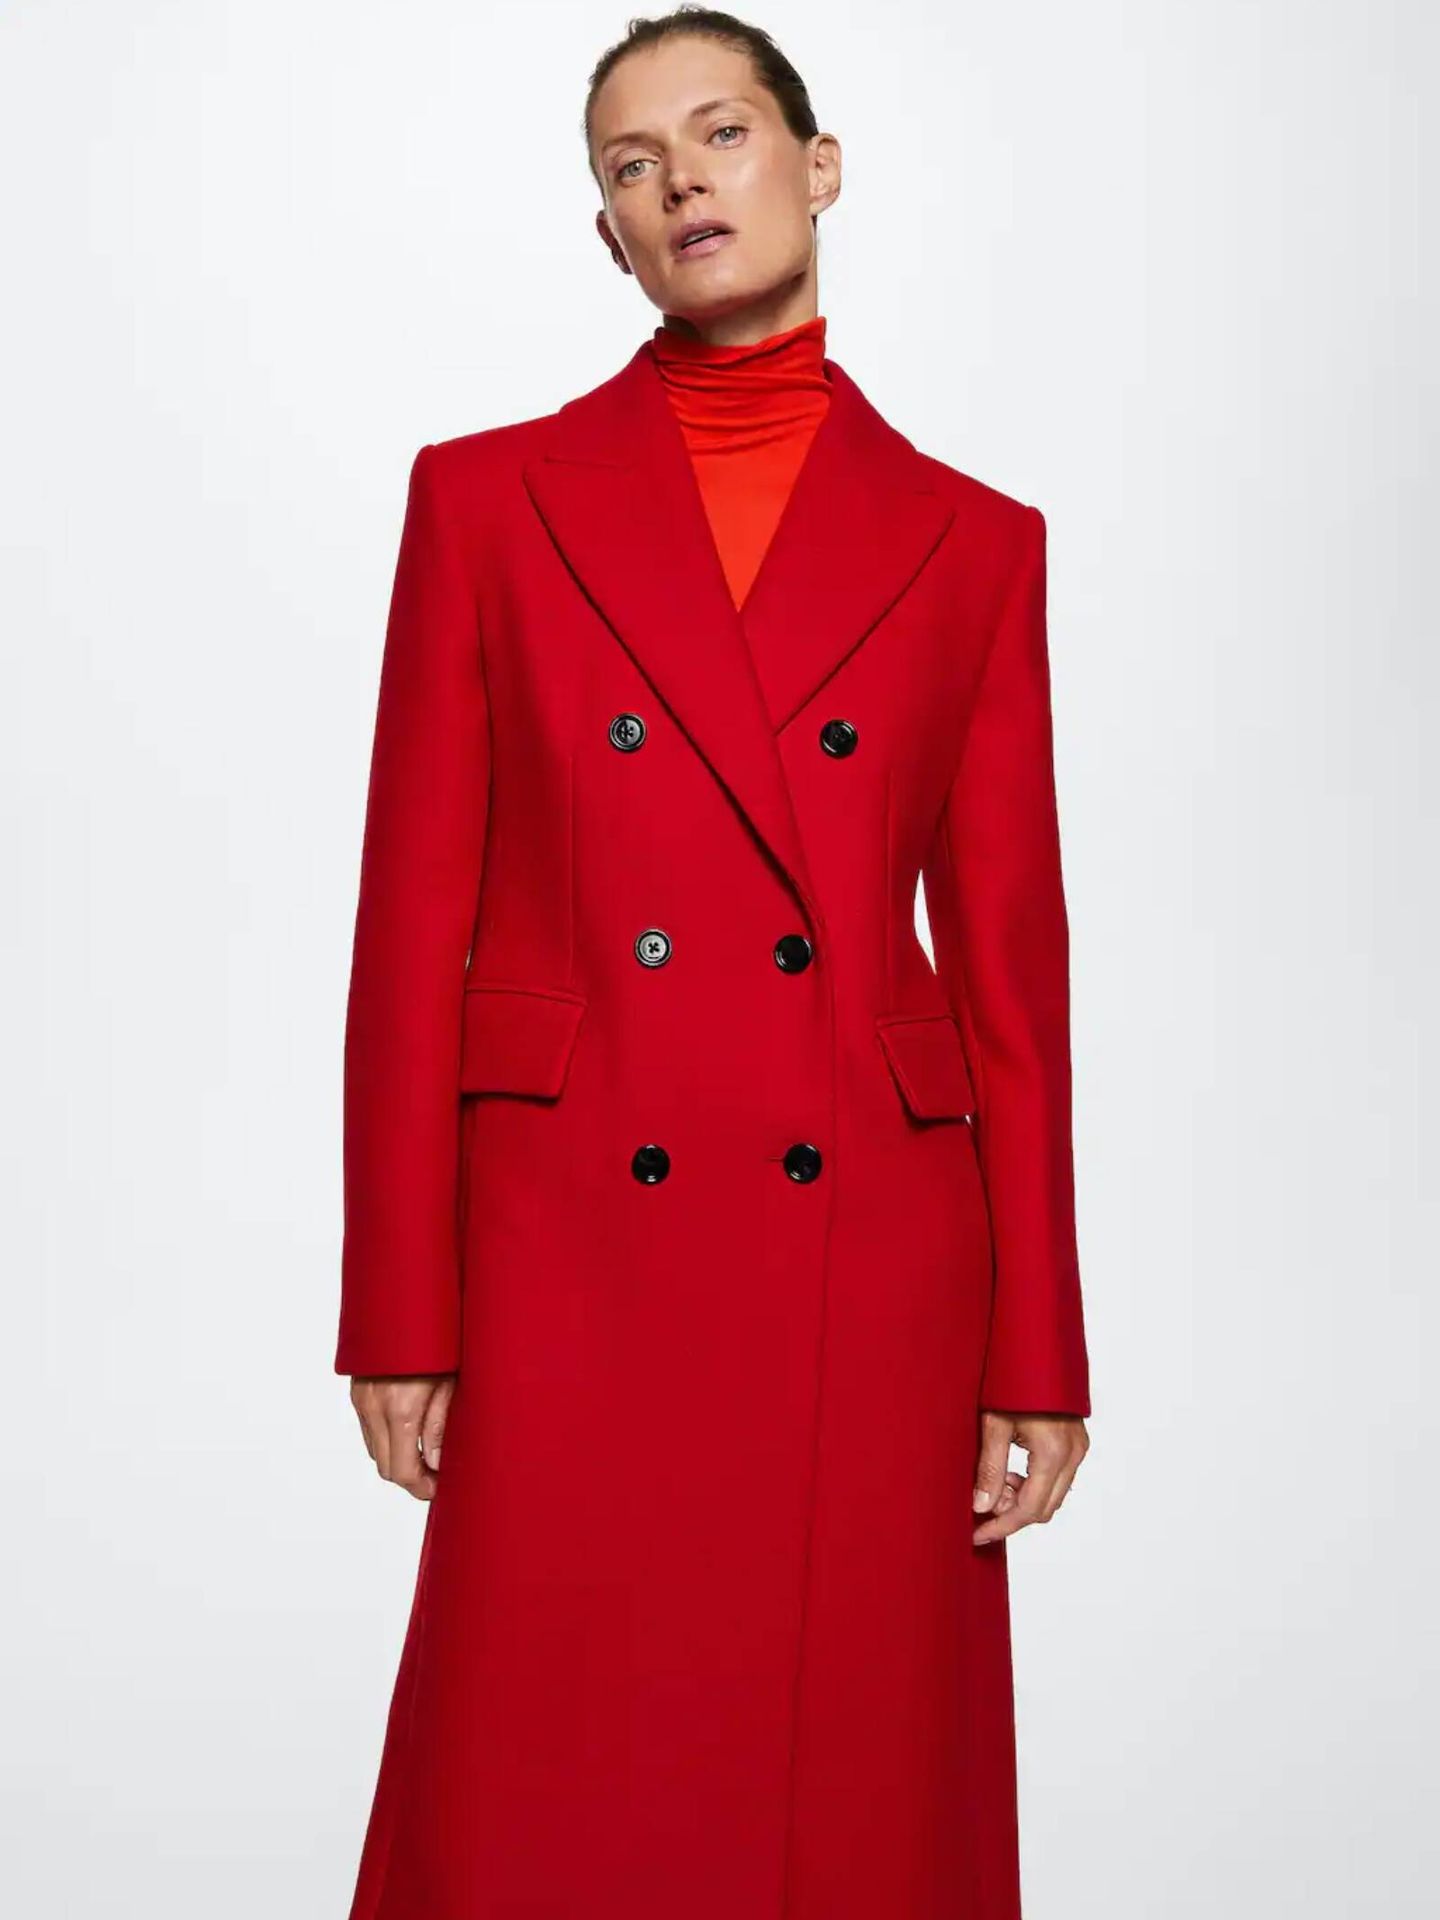 Amor a primera vista por este abrigo de Mango en color rojo. (Cortesía)